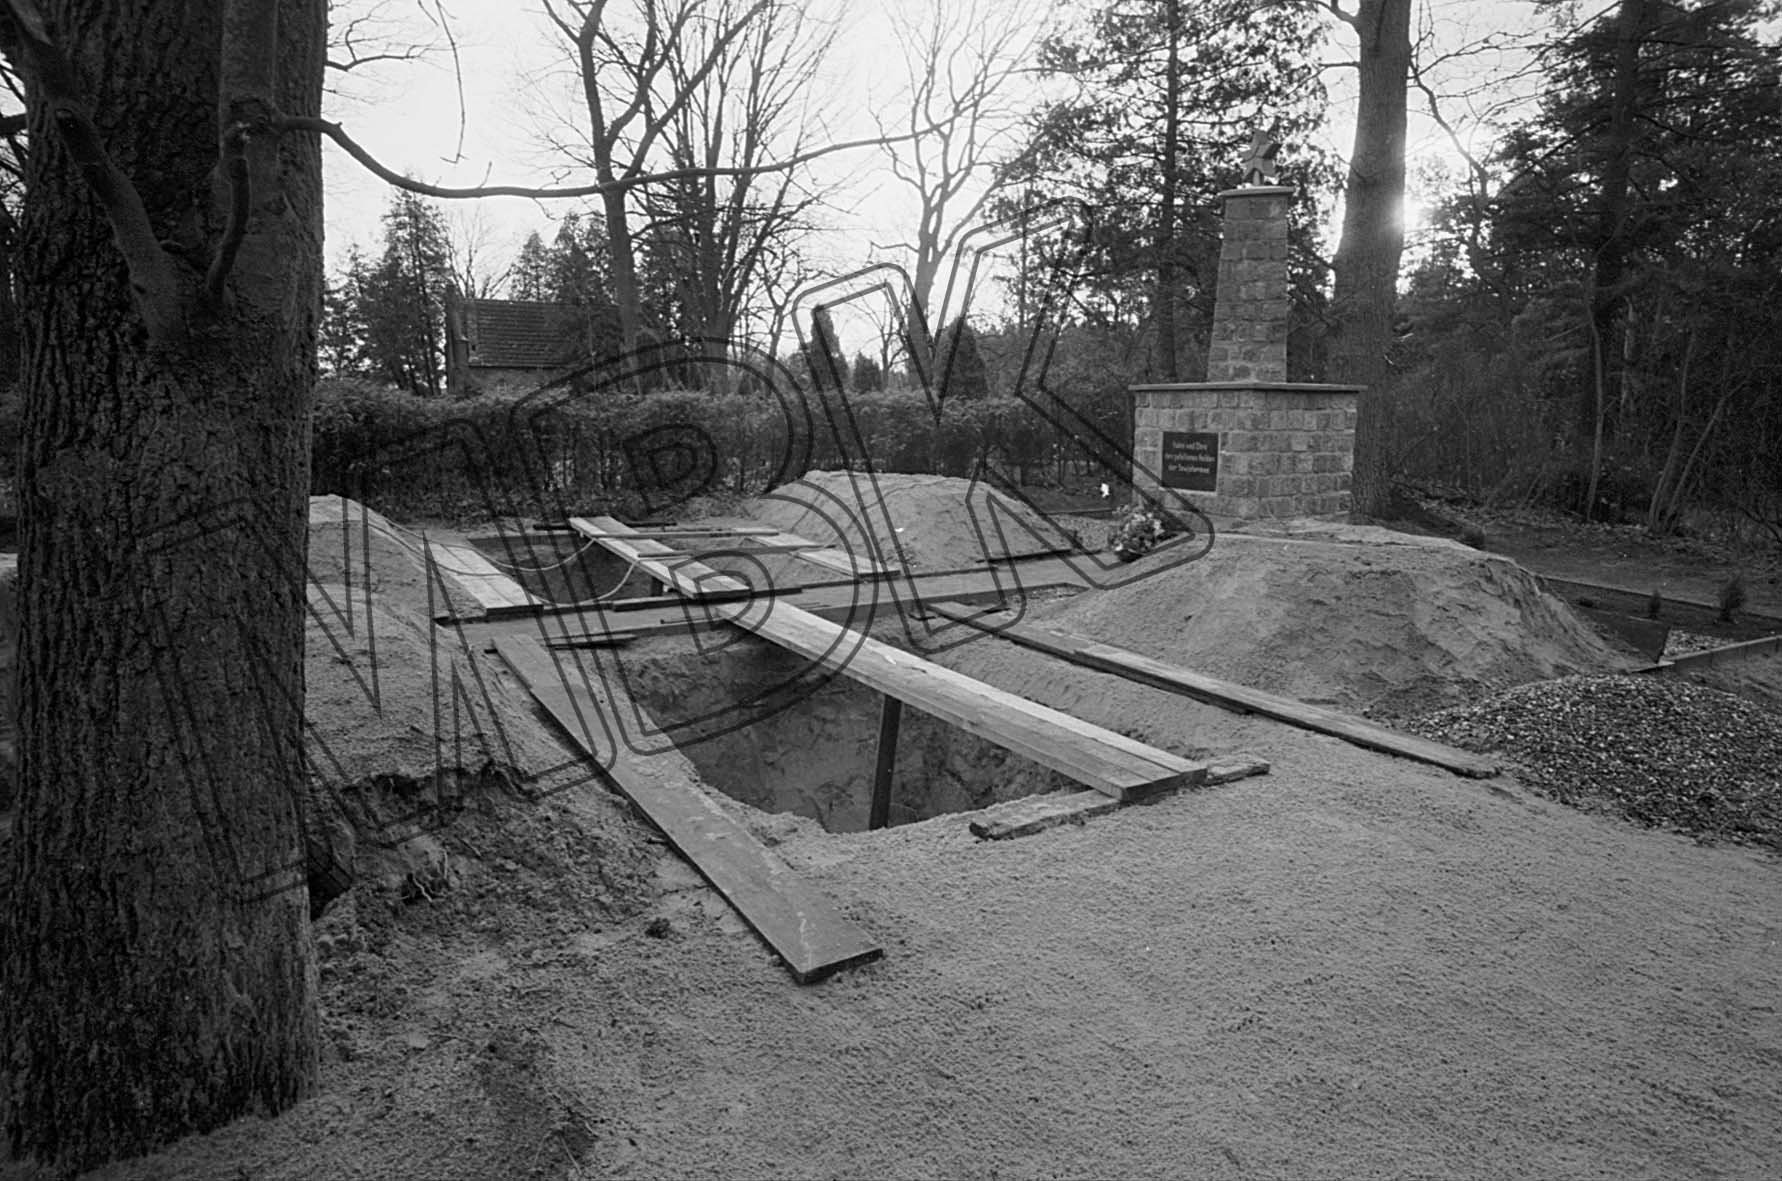 Fotografie: Ausgehobene Gräber vor der Umbettung von sowjetischen Gefallenen auf den Dorffriedhof, Briesen, Dezember 1992 (Museum Berlin-Karlshorst RR-P)